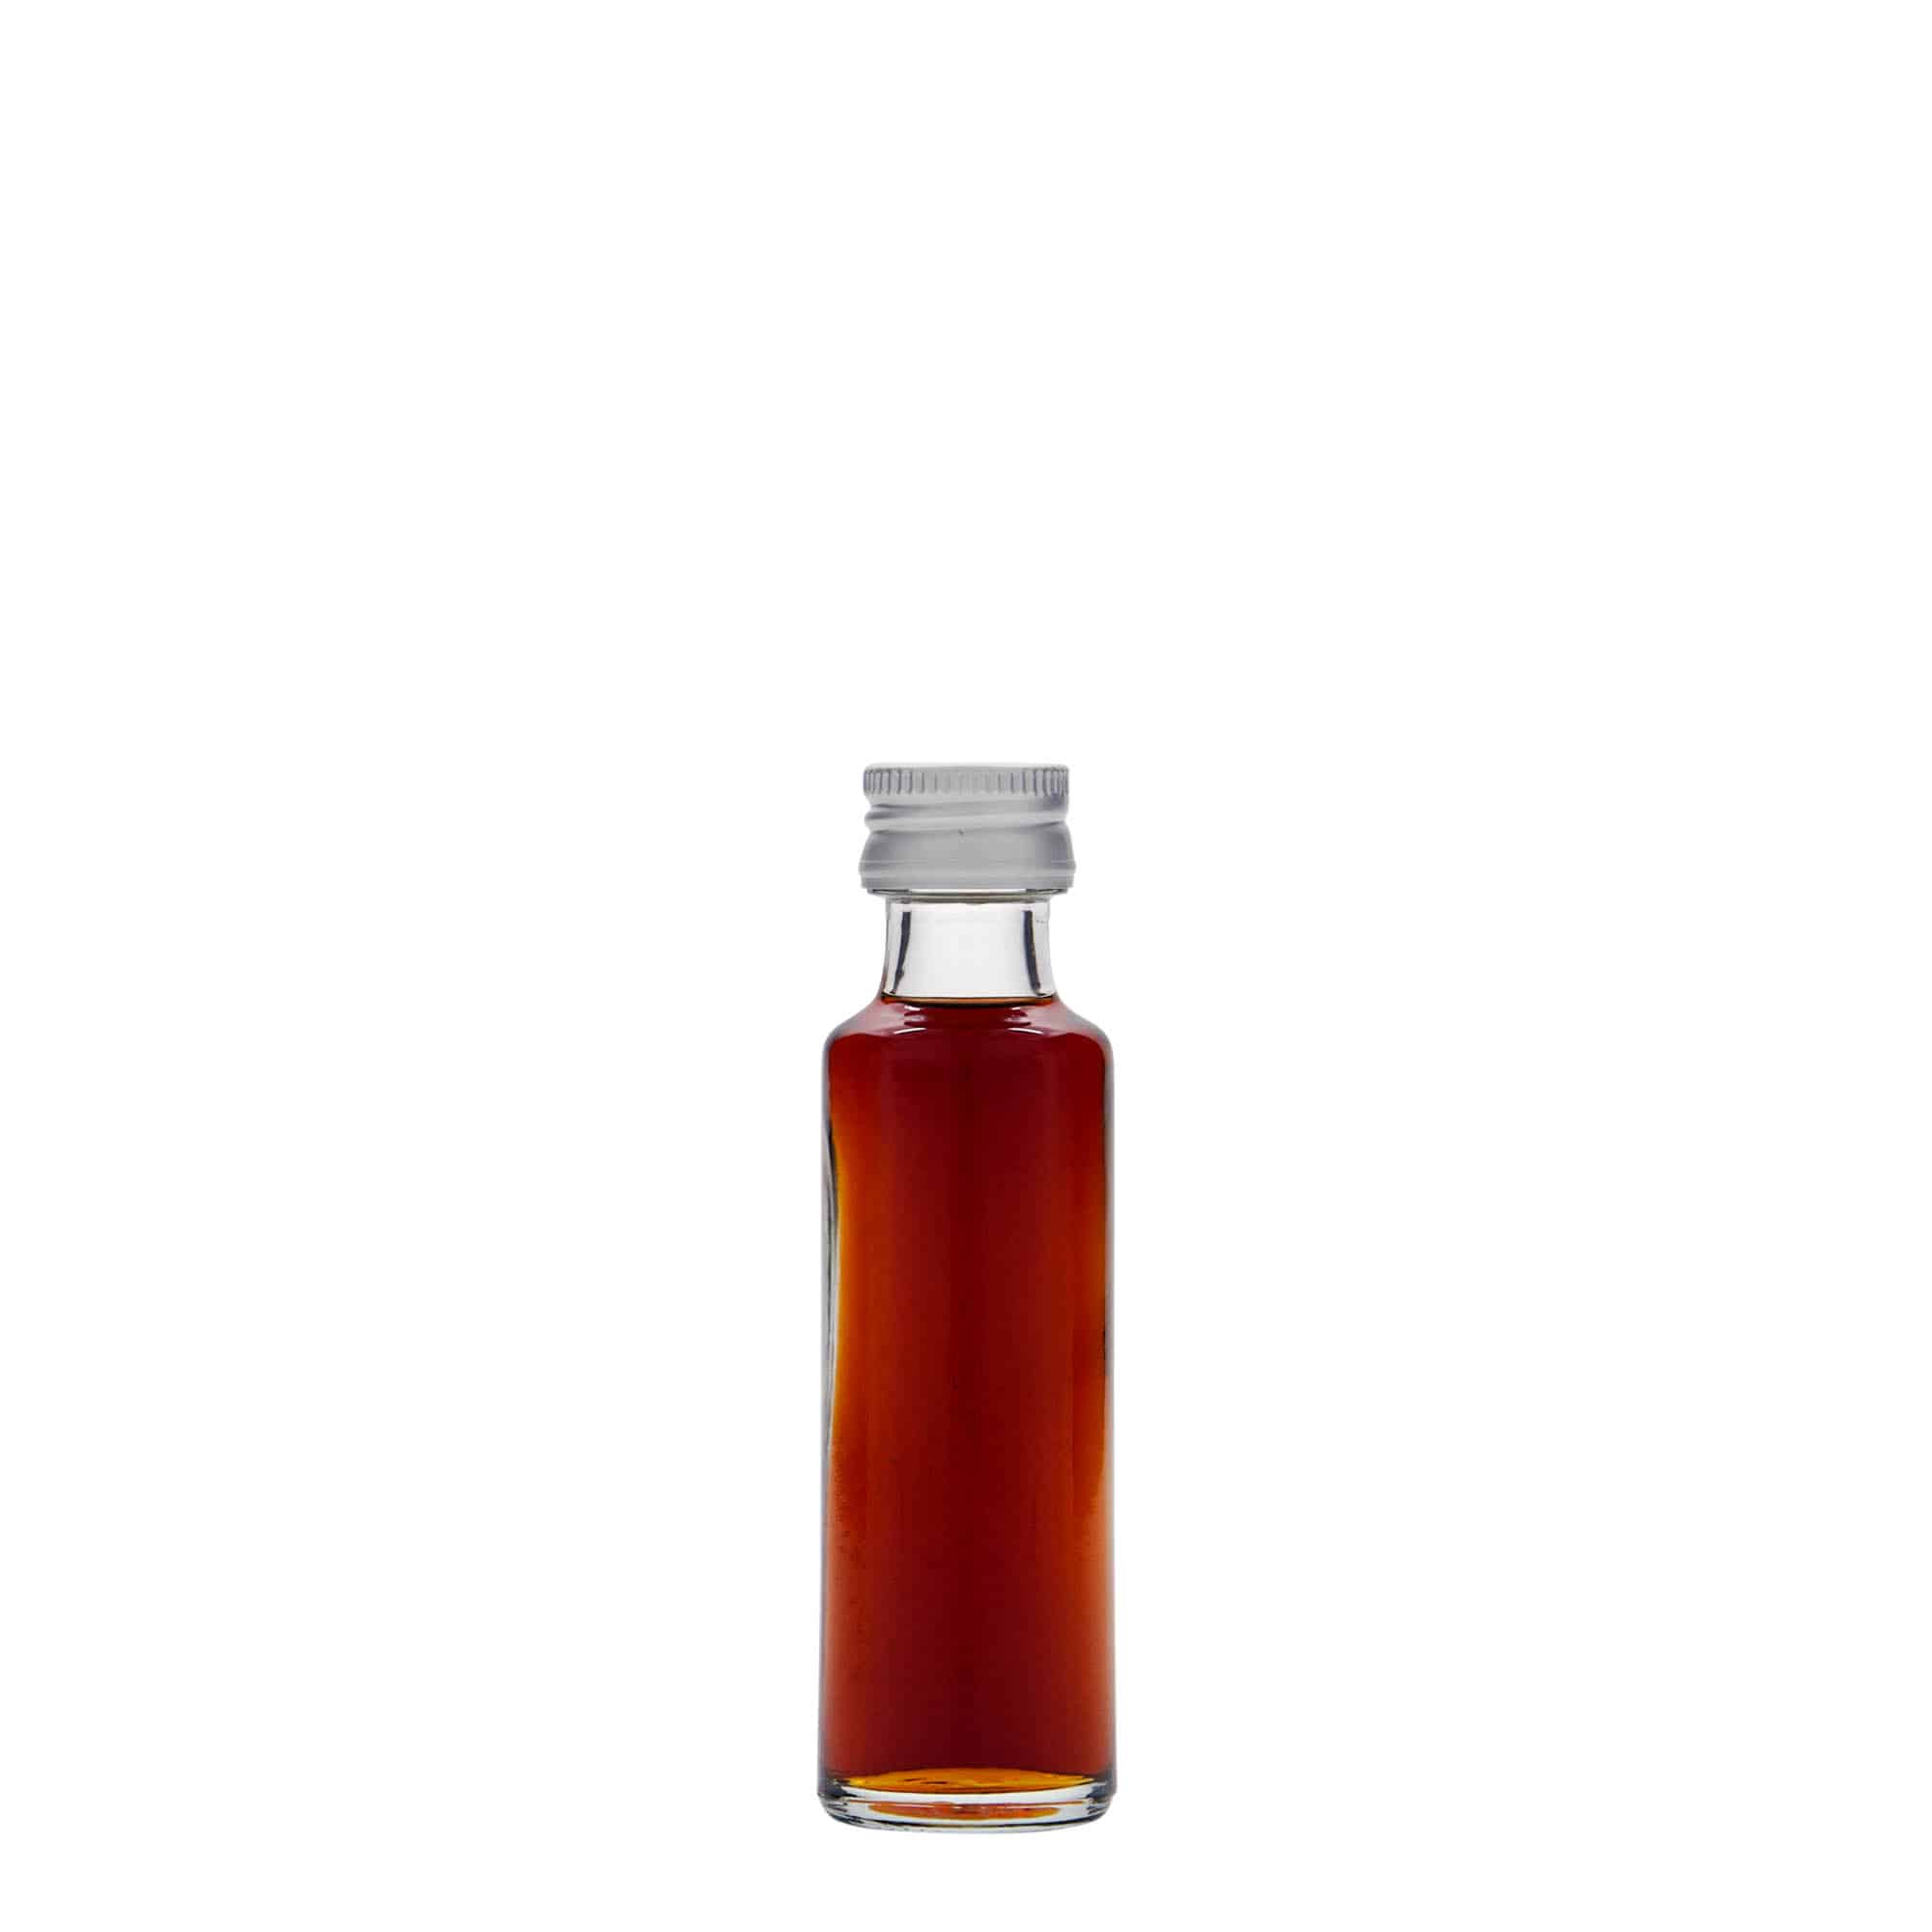 Bouteille 'Homemade' huile et vinaigre 1l - L'Incroyable